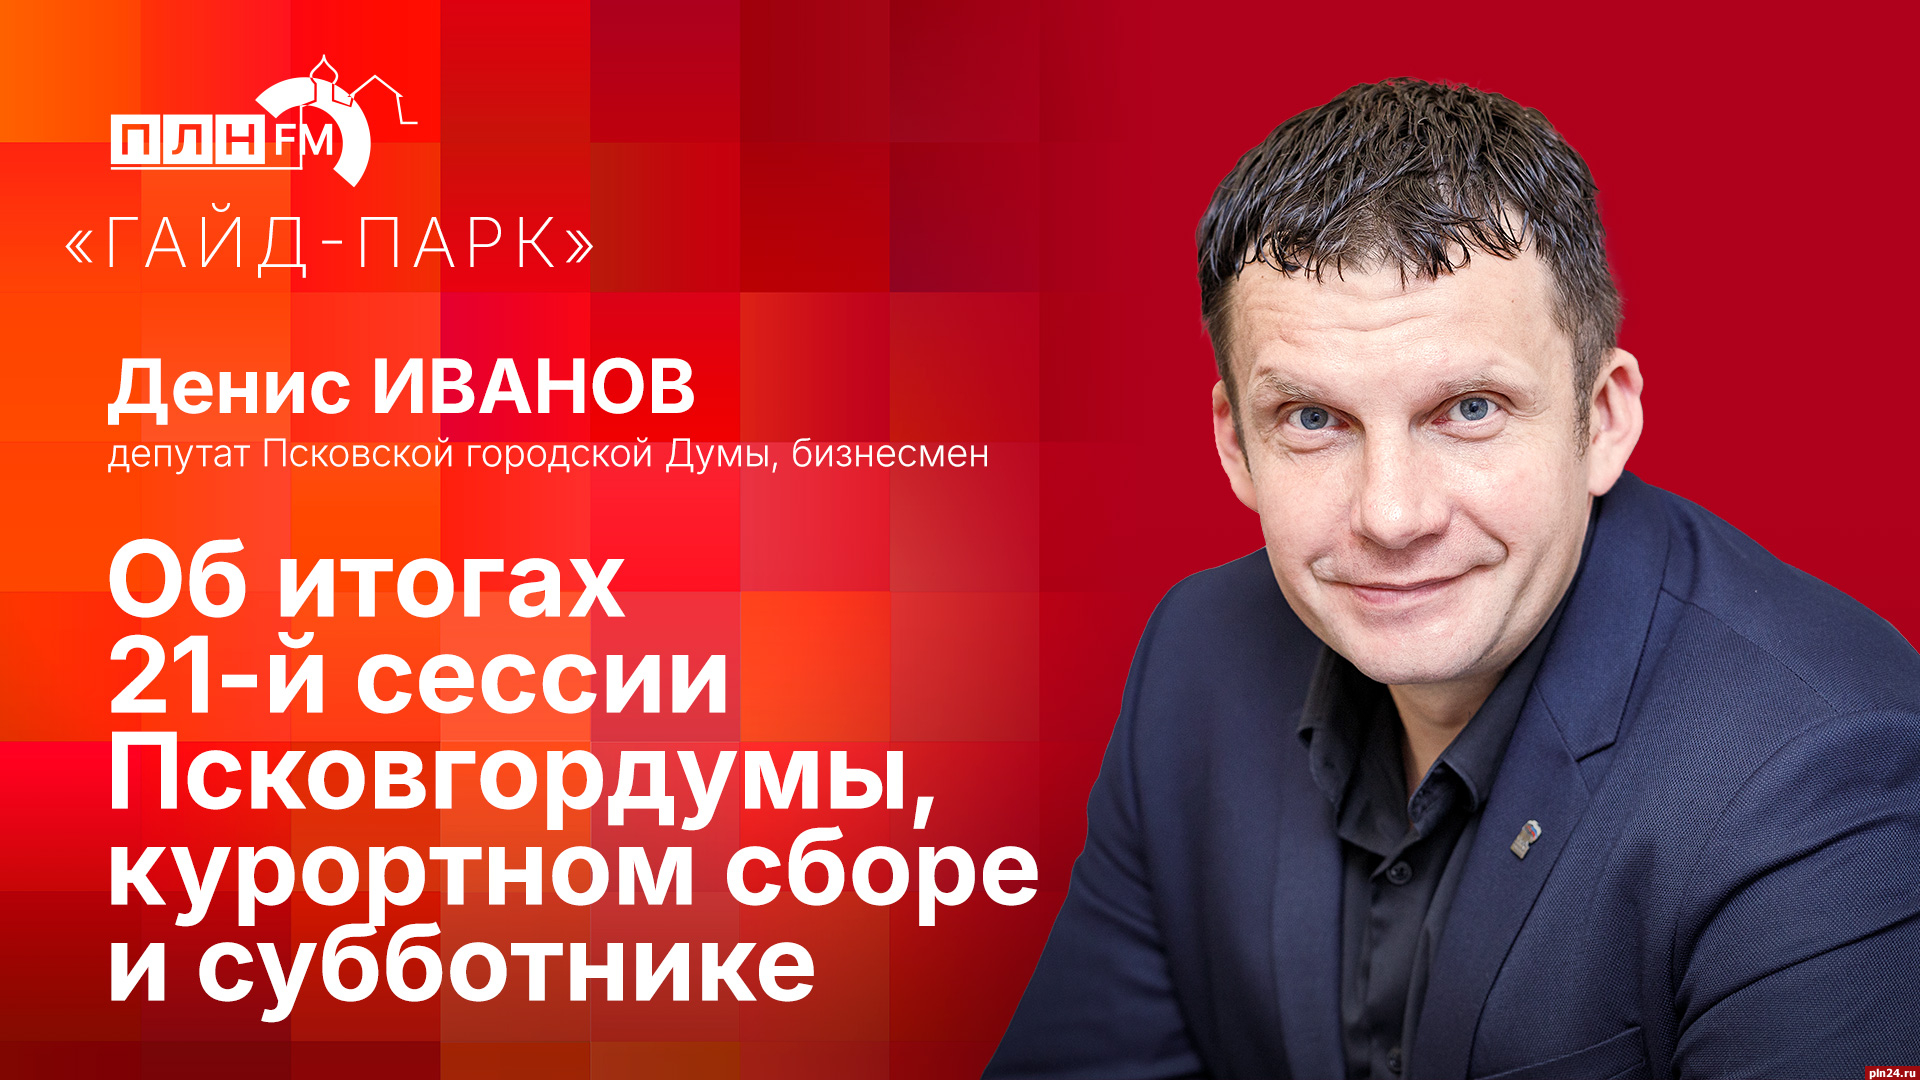 Начинается видеотрансляция программы «Гайд-парк» с Денисом Ивановым